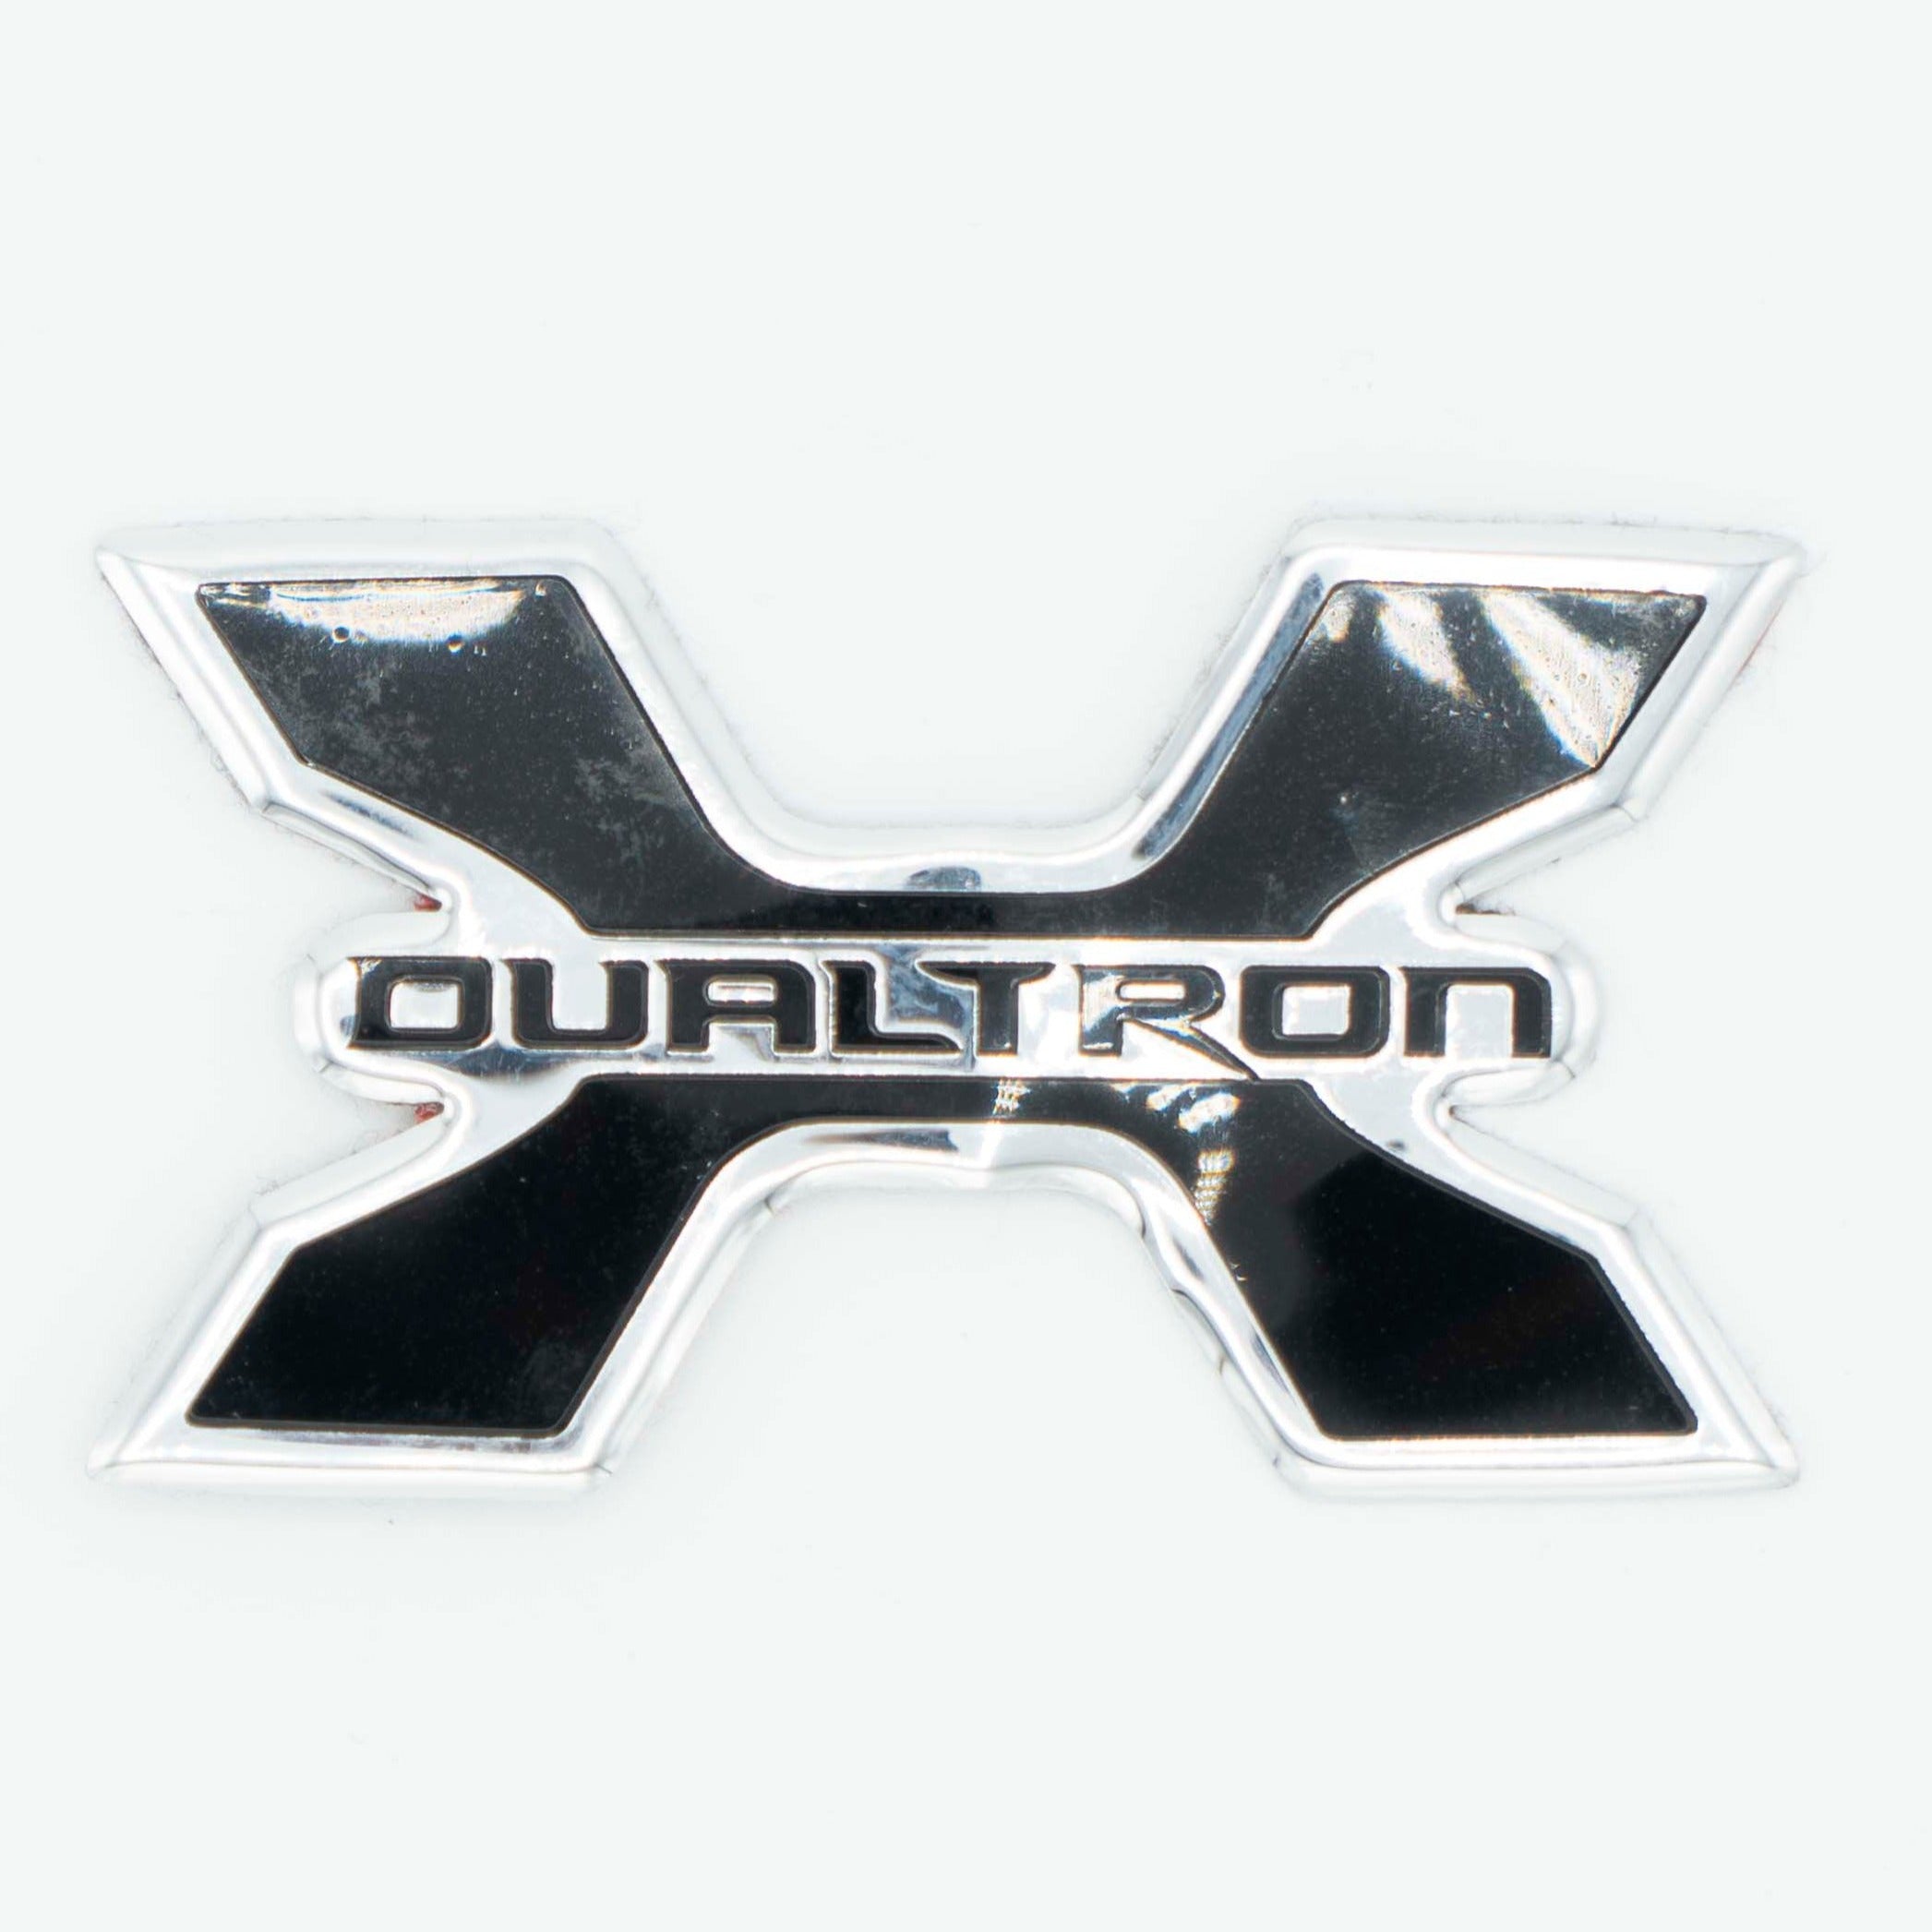 Emblem for Dualtron X